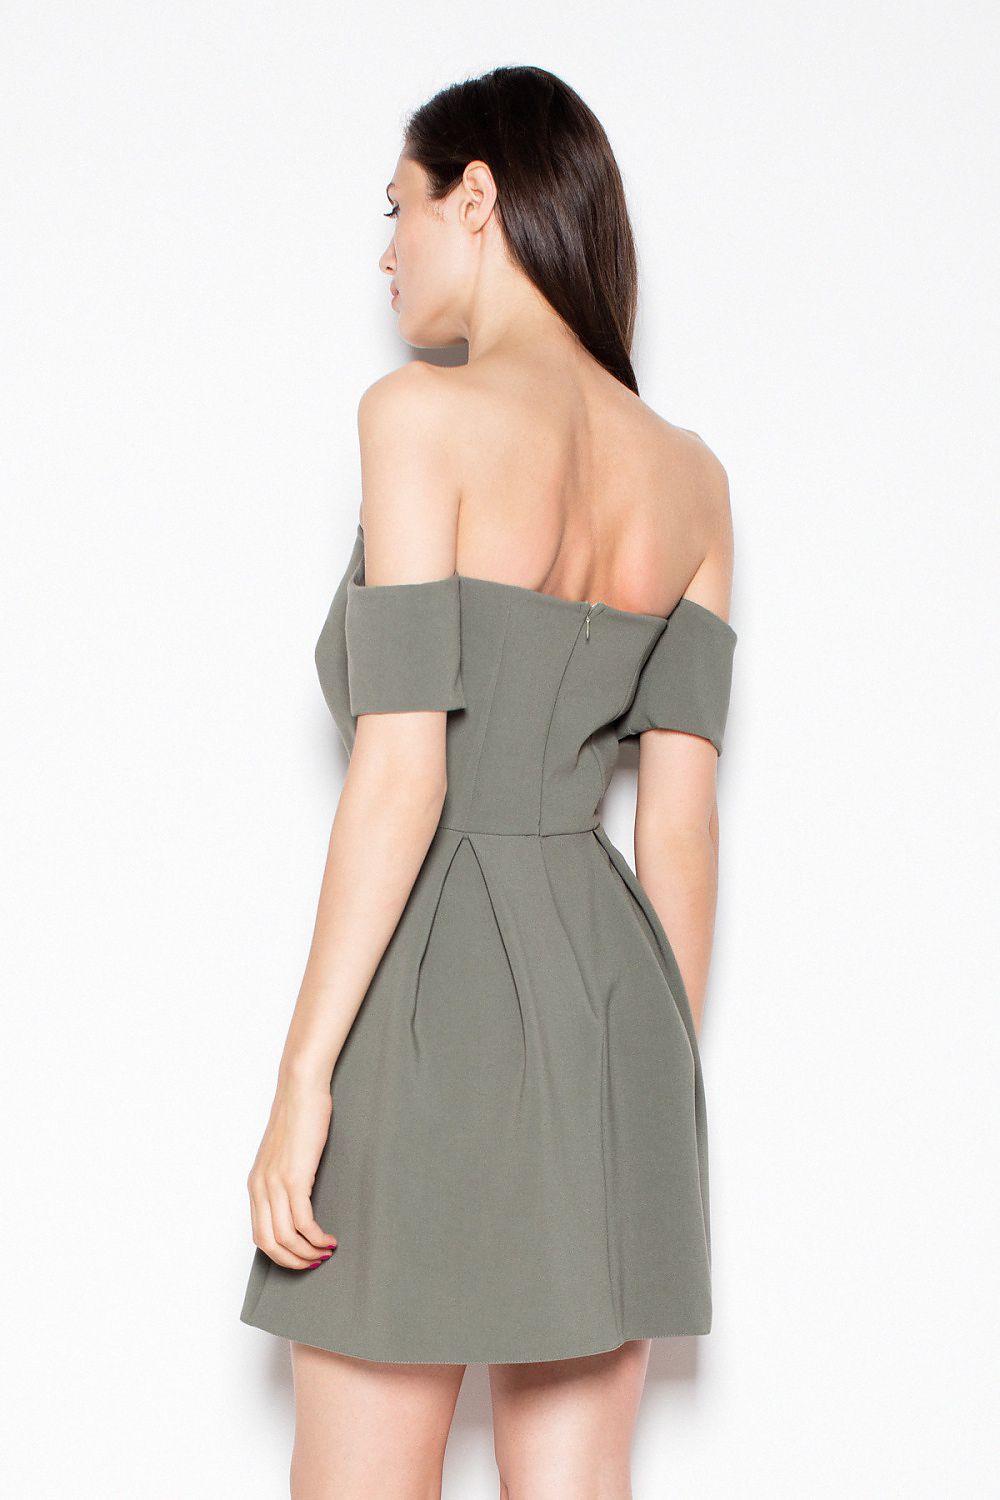 TEEK - Green Off-Shoulder Evening Dress DRESS TEEK M   